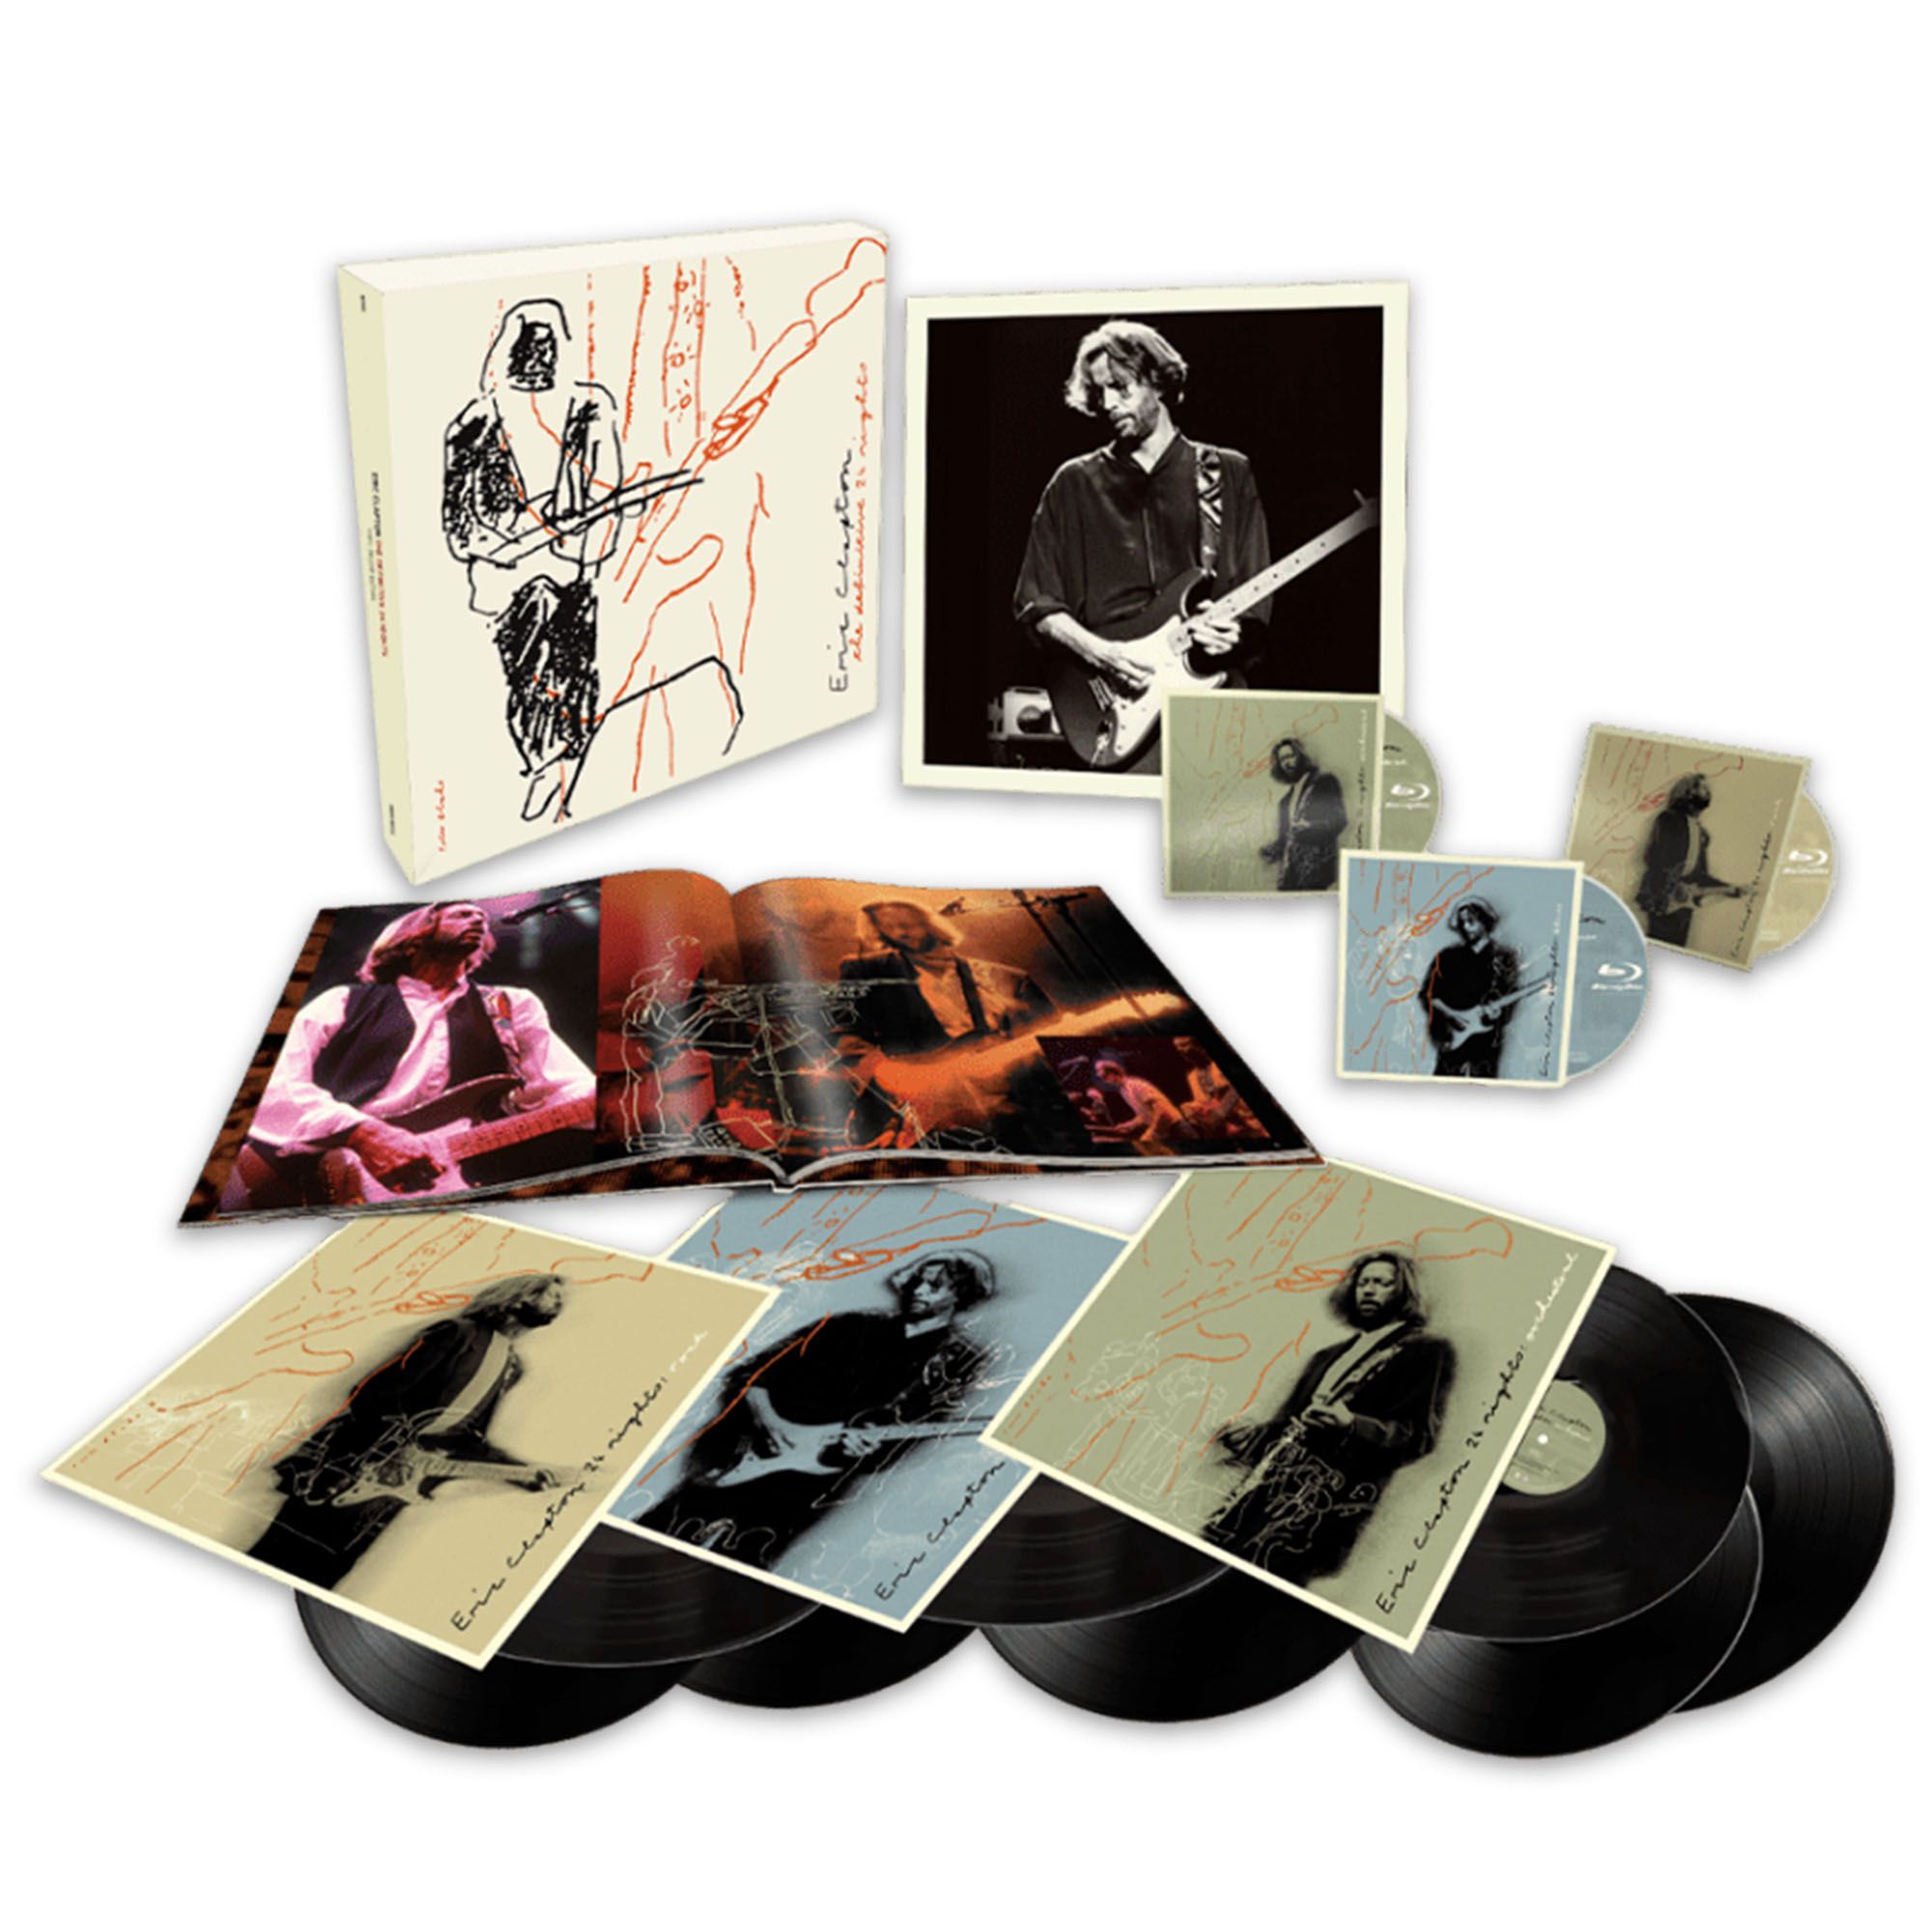 1 24 ночи. Eric Clapton: the Definitive 24 Nights. 0093624895183, Виниловая пластинка Clapton, Eric, the complete Reprise Studio albums Vol.1 (Box). Vinyl Box Set 50-е. Led Zeppelin 1979 2015 super Deluxe Box Set.